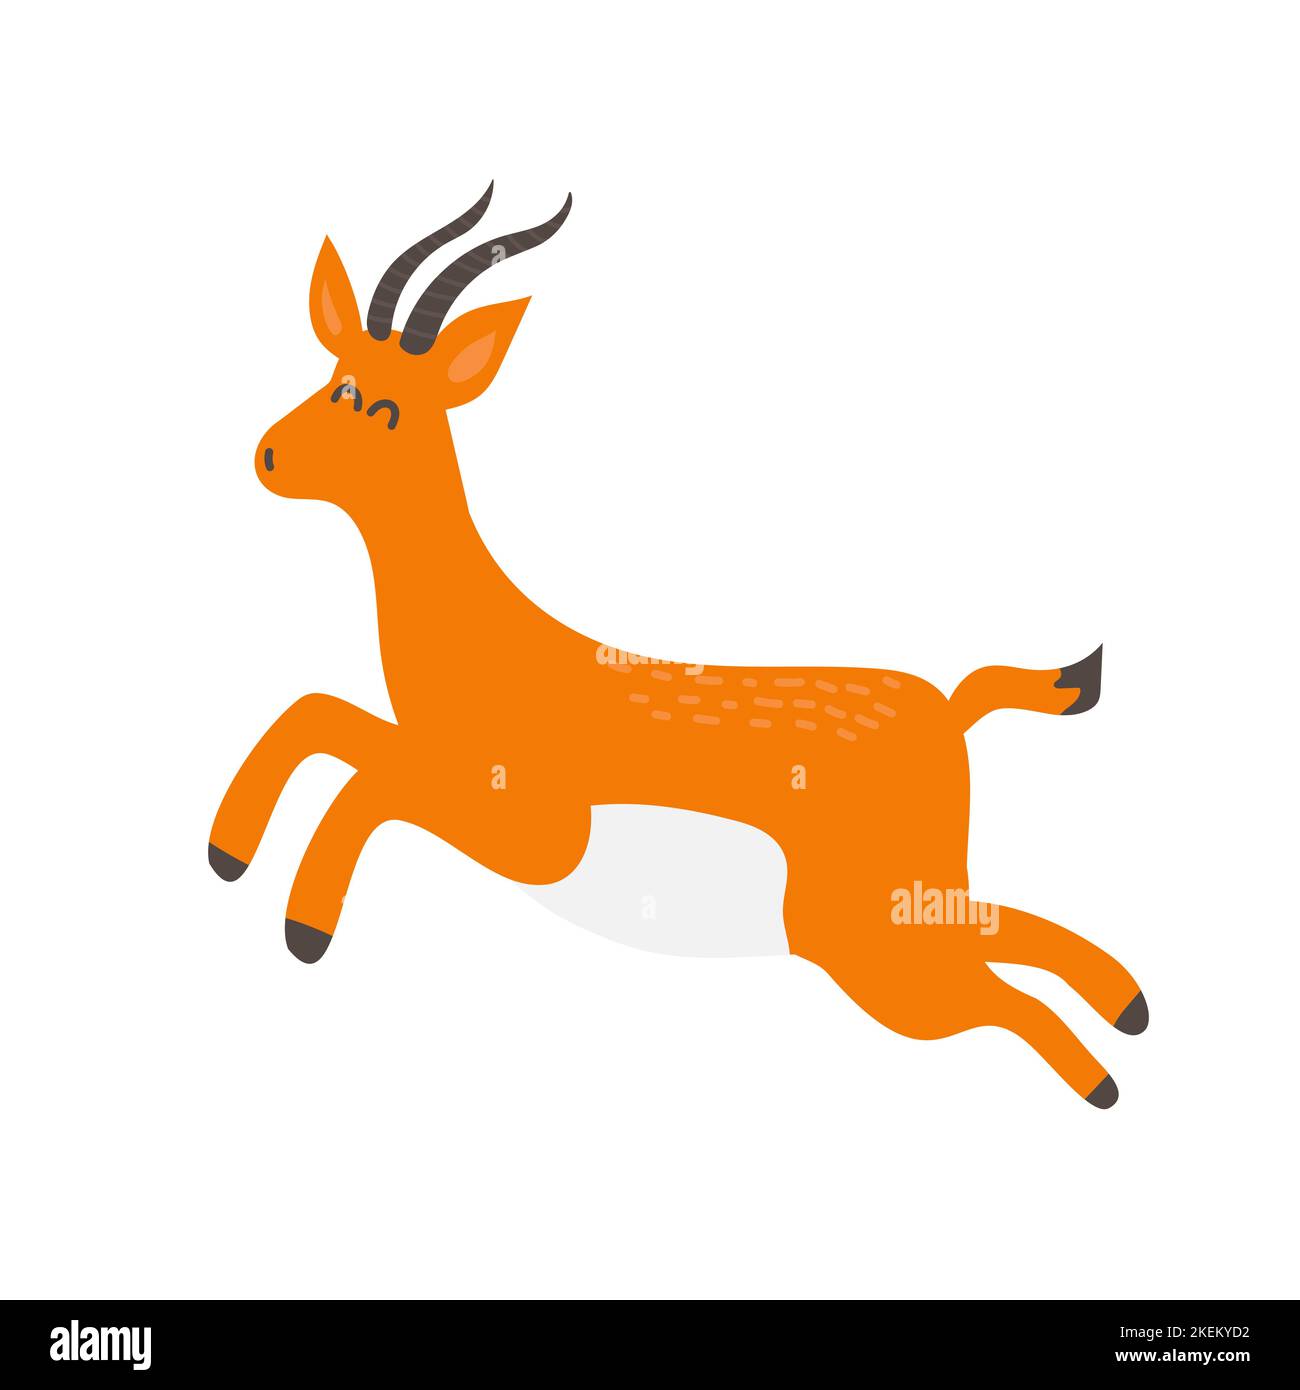 Dessin de dessins animés d'antilope africaine. Illustration vectorielle isolée. Joli dessin à la main Illustration de Vecteur